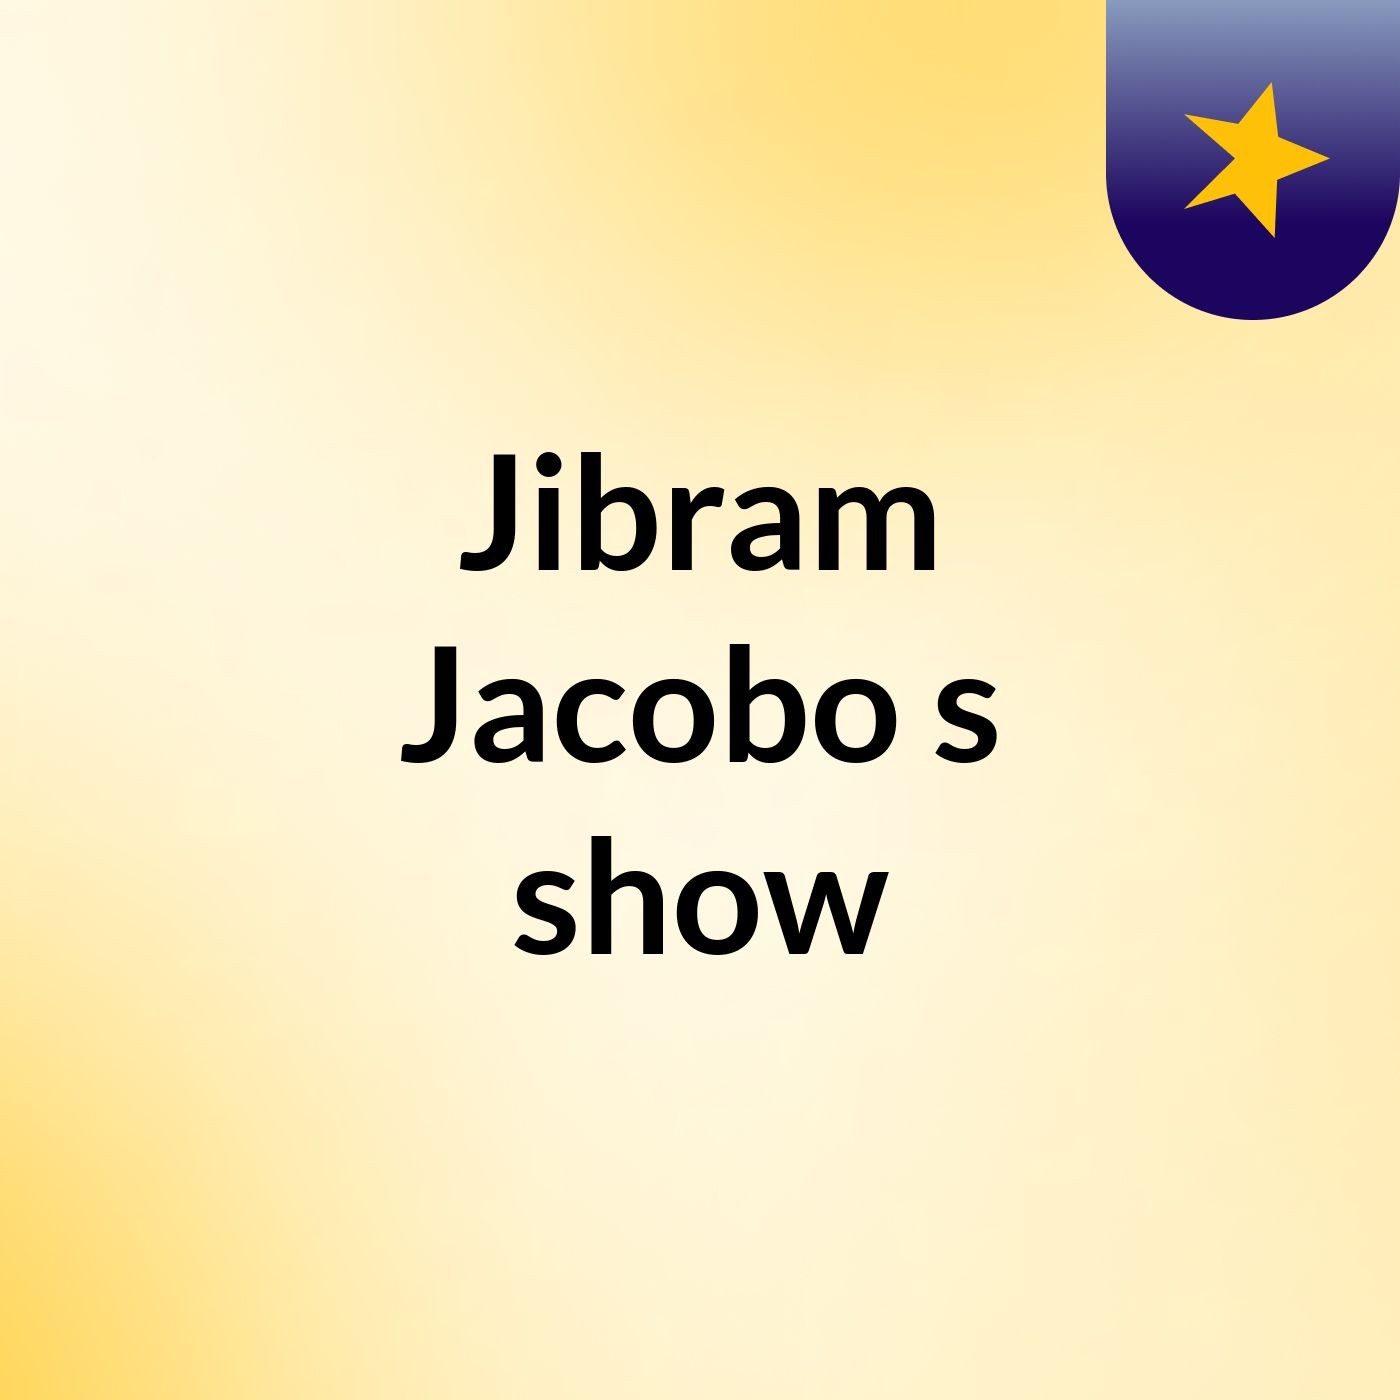 Jibram Jacobo's show